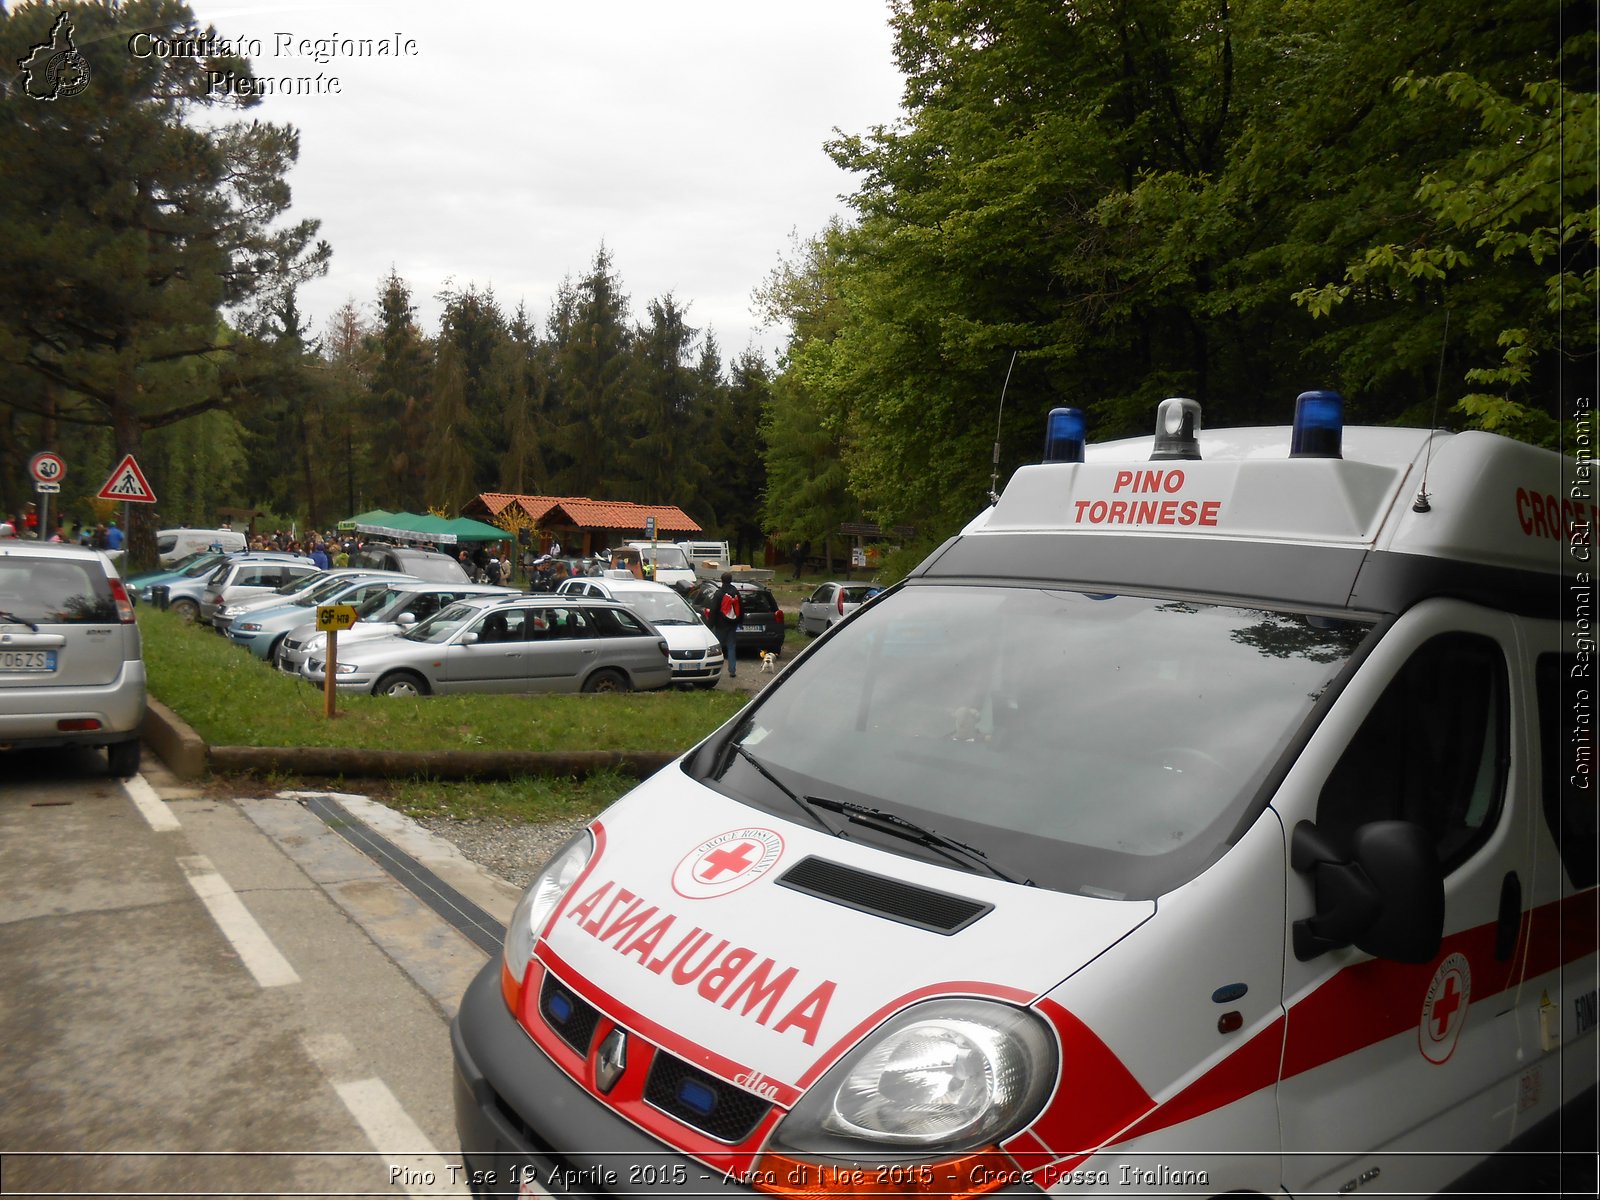 Pino T.se 19 Aprile 2015 - Arca di No 2015 - Croce Rossa Italiana- Comitato Regionale del Piemonte